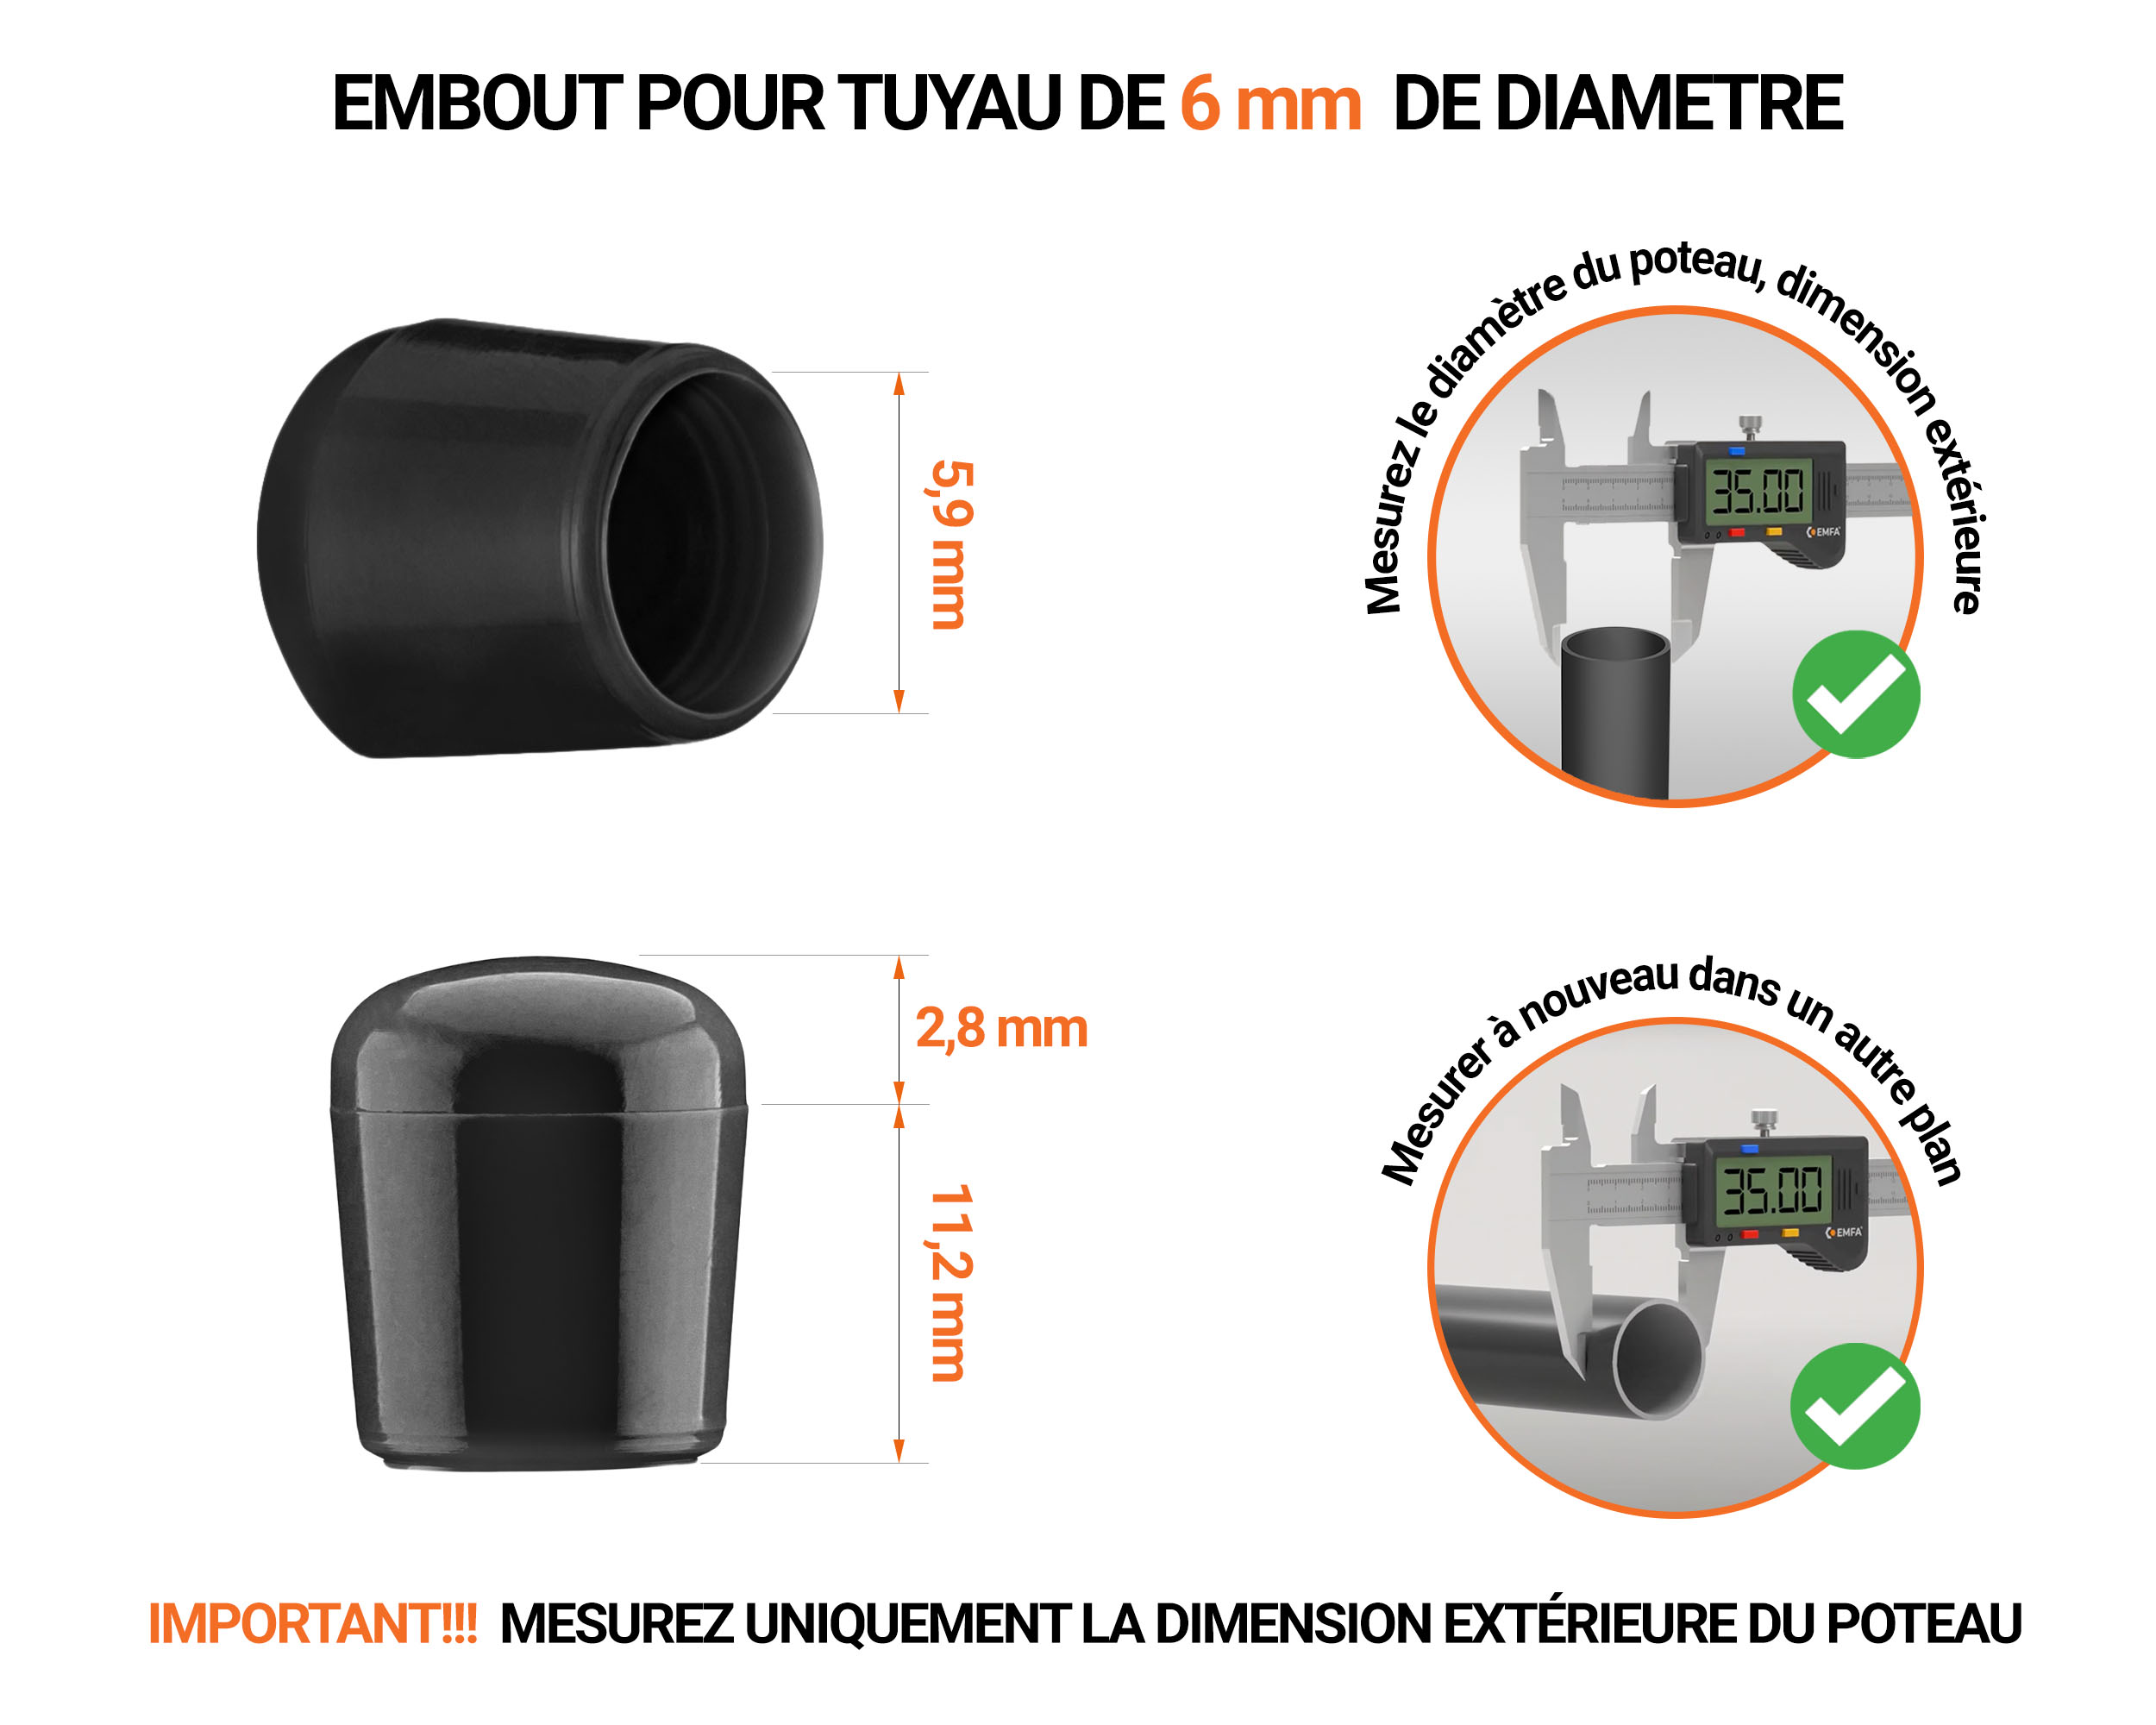 Embout noir de diamètre extérieur 6 mm pour tube rond avec dimensions et guide de mesure correcte du bouchon plastique.